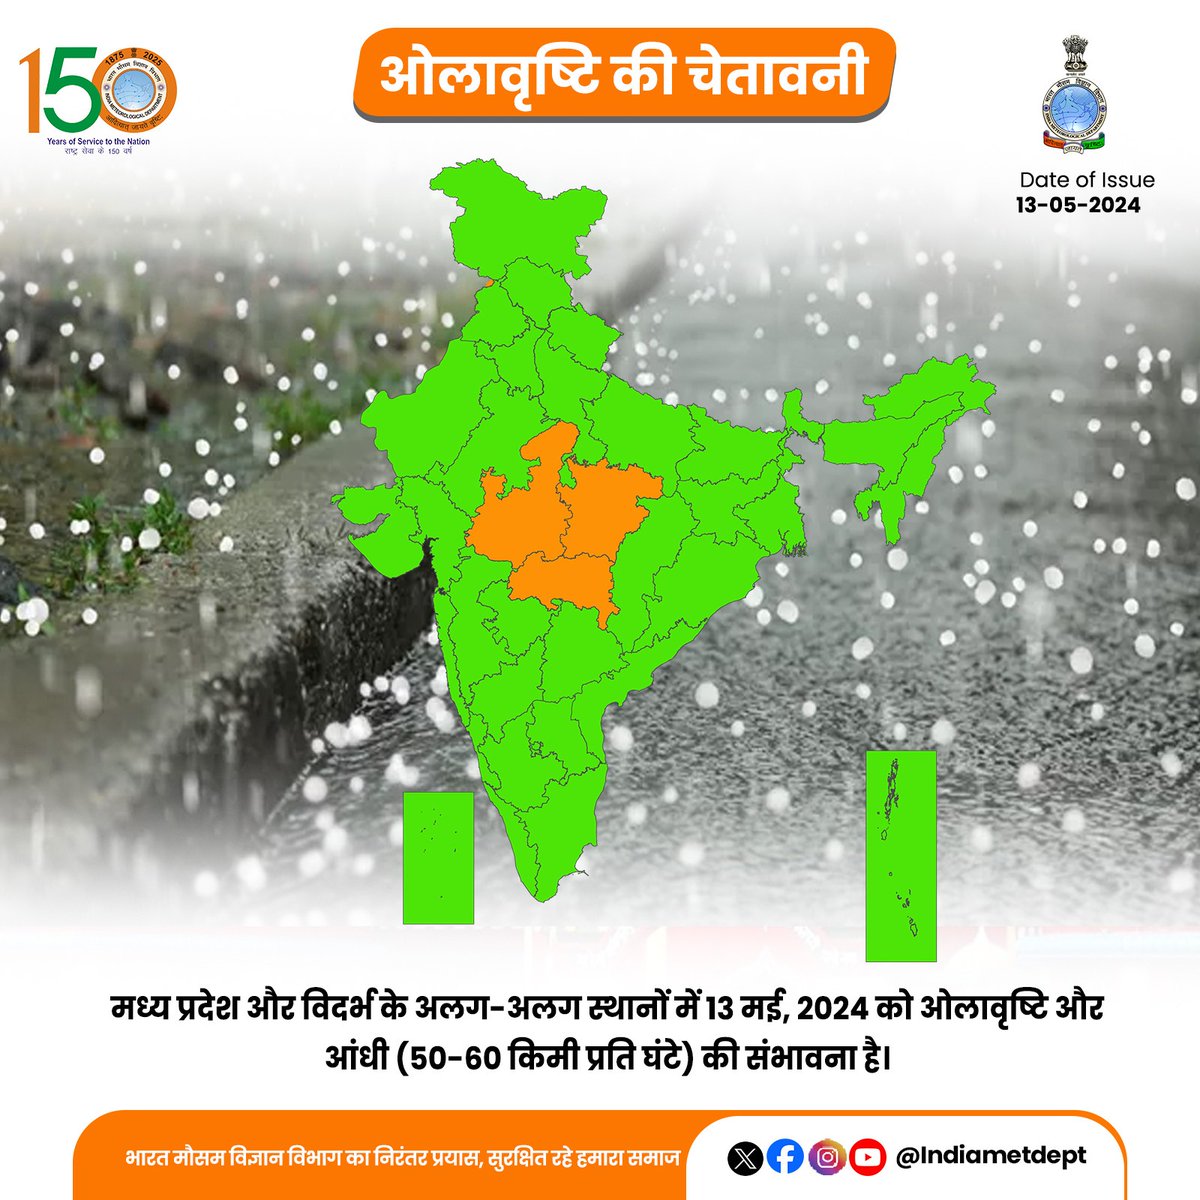 मध्य प्रदेश और विदर्भ के अलग-अलग स्थानों में 13 मई, 2024 को ओलावृष्टि और आंधी (50-60 किमी प्रति घंटे) की संभावना है। 

 #hailstormalert #weatherupdate #hailstorm

@Indiametdept